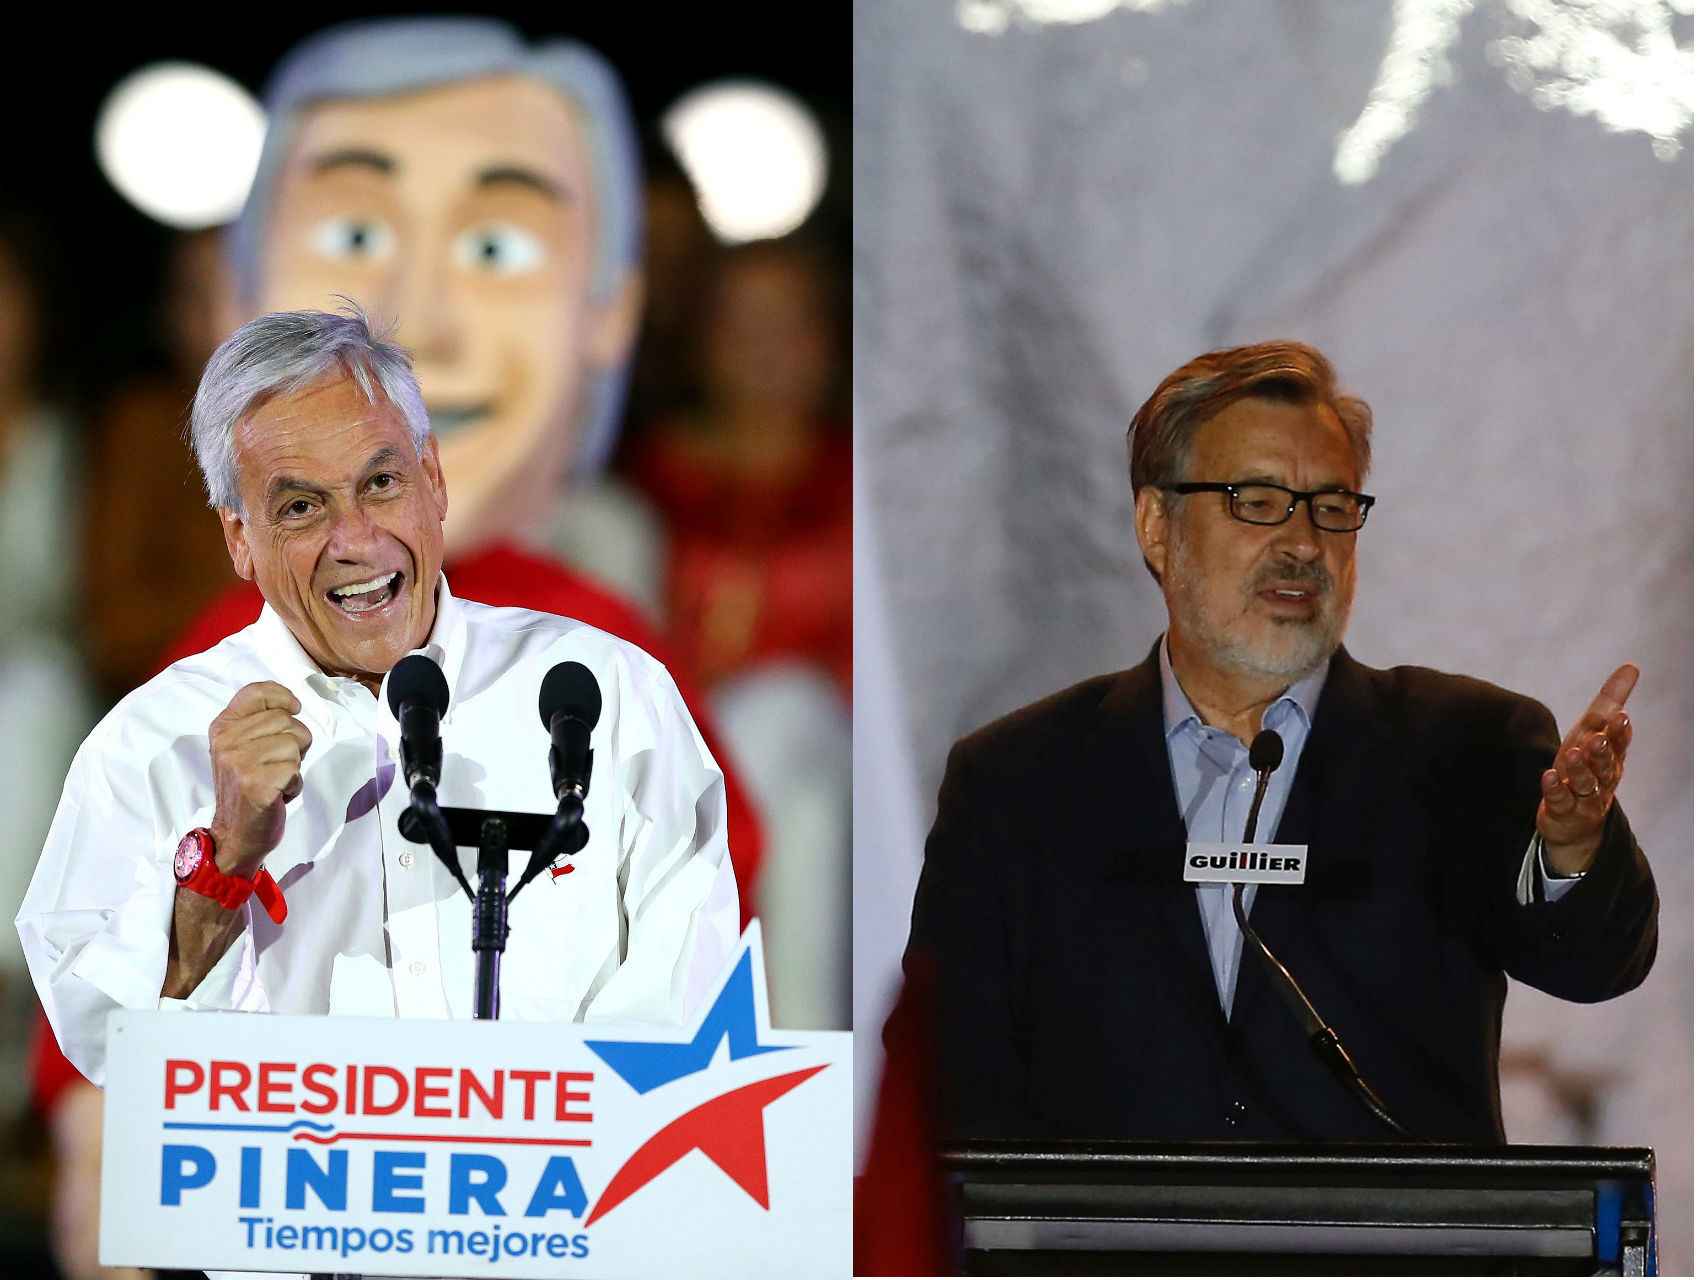 Piñera y Guillier los dos principales candidatos a las elecciones de Chile.